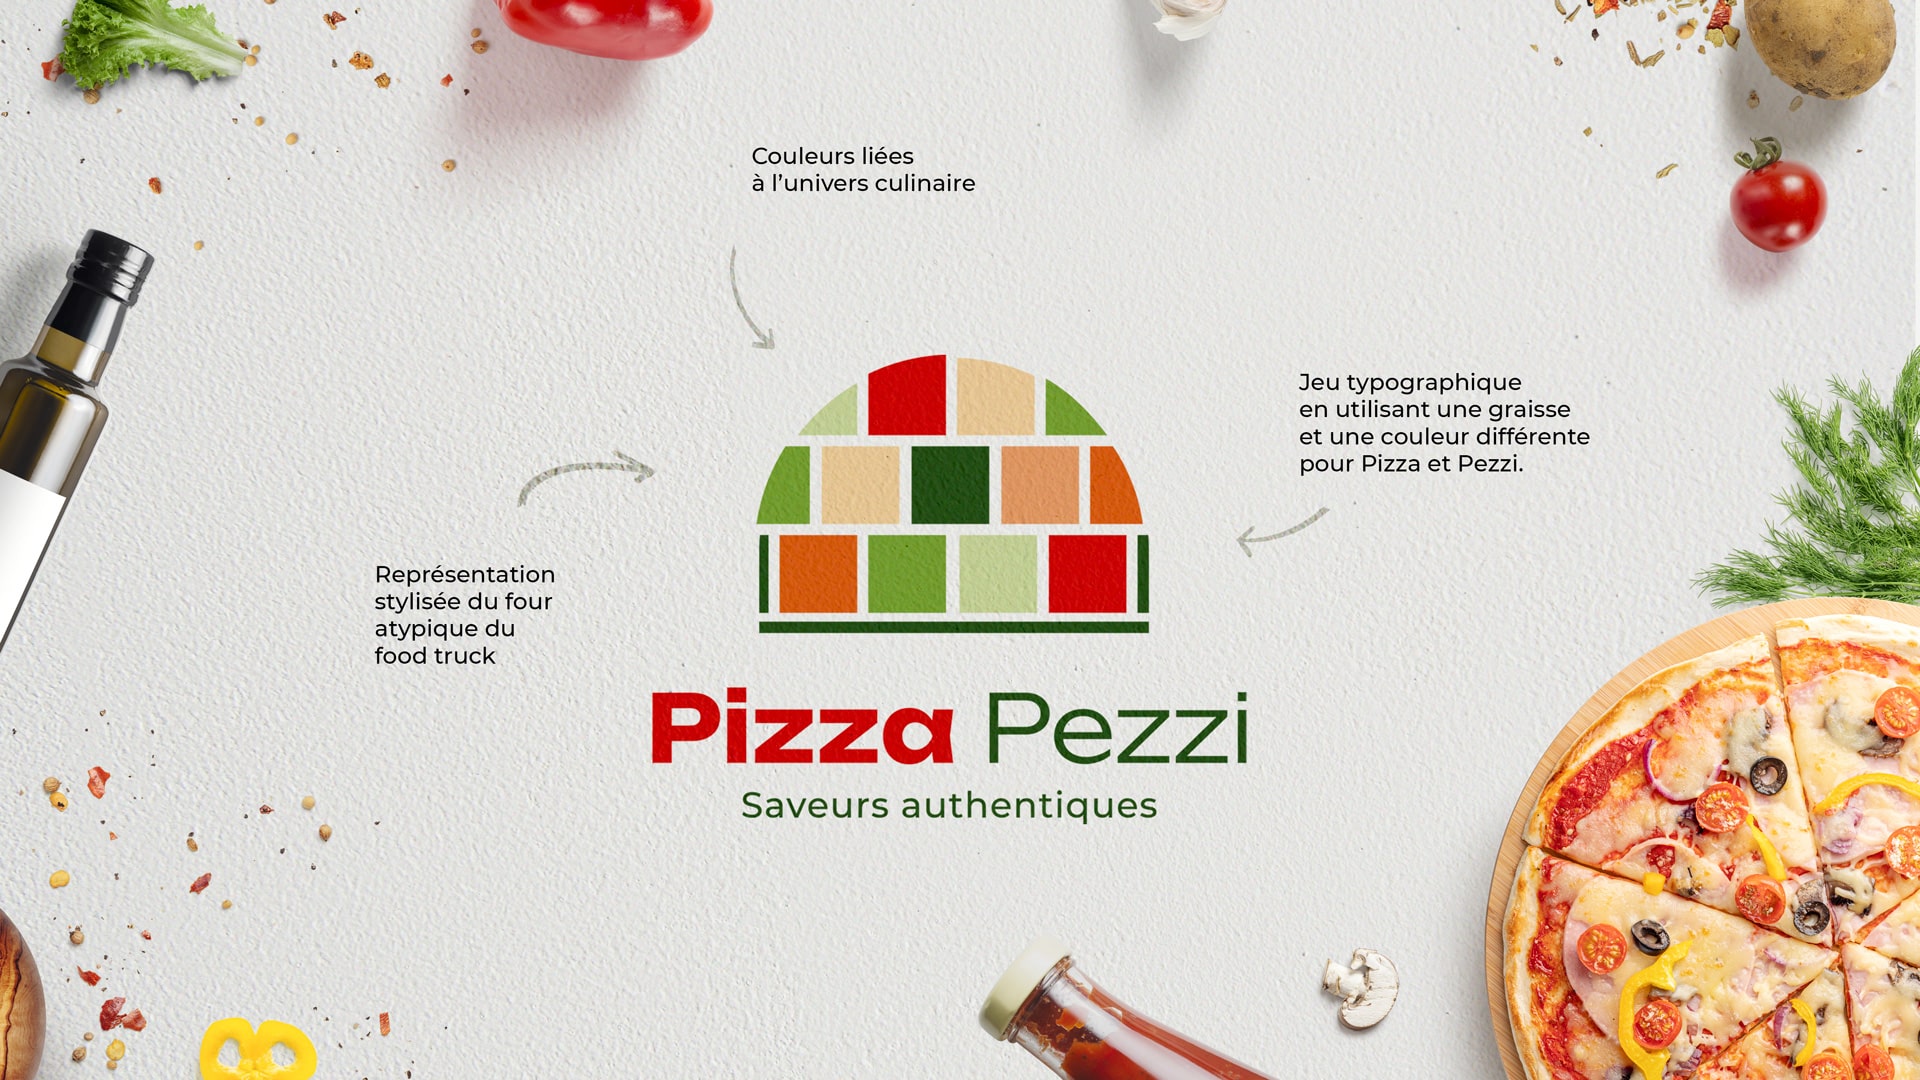 Explications du logo et des éléments qui composent l'identité visuelle de Pizza Pezzi